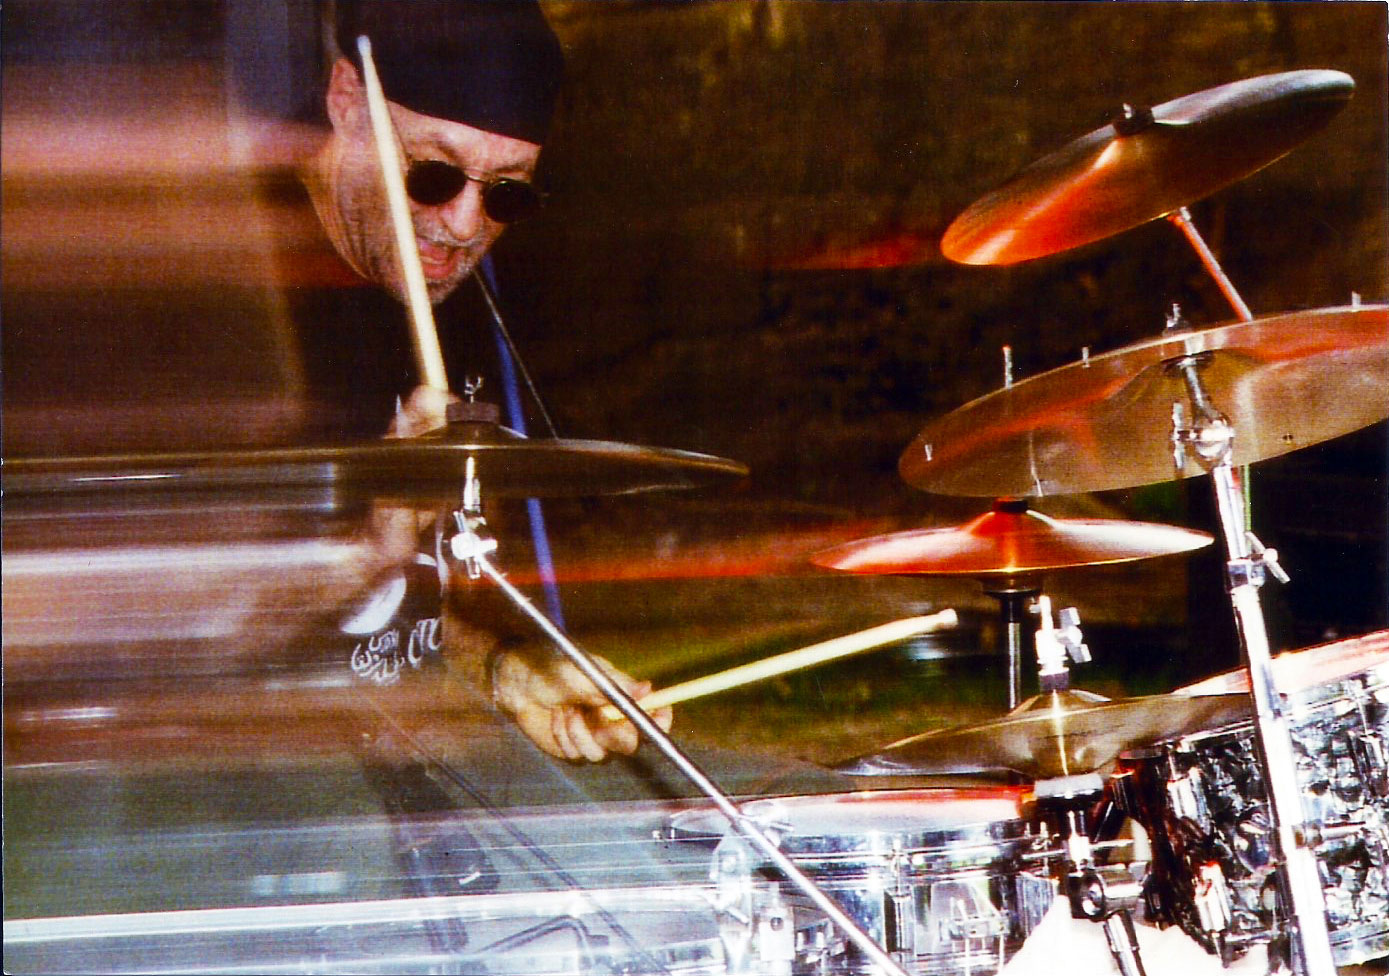 Gary Reynolds Drumming